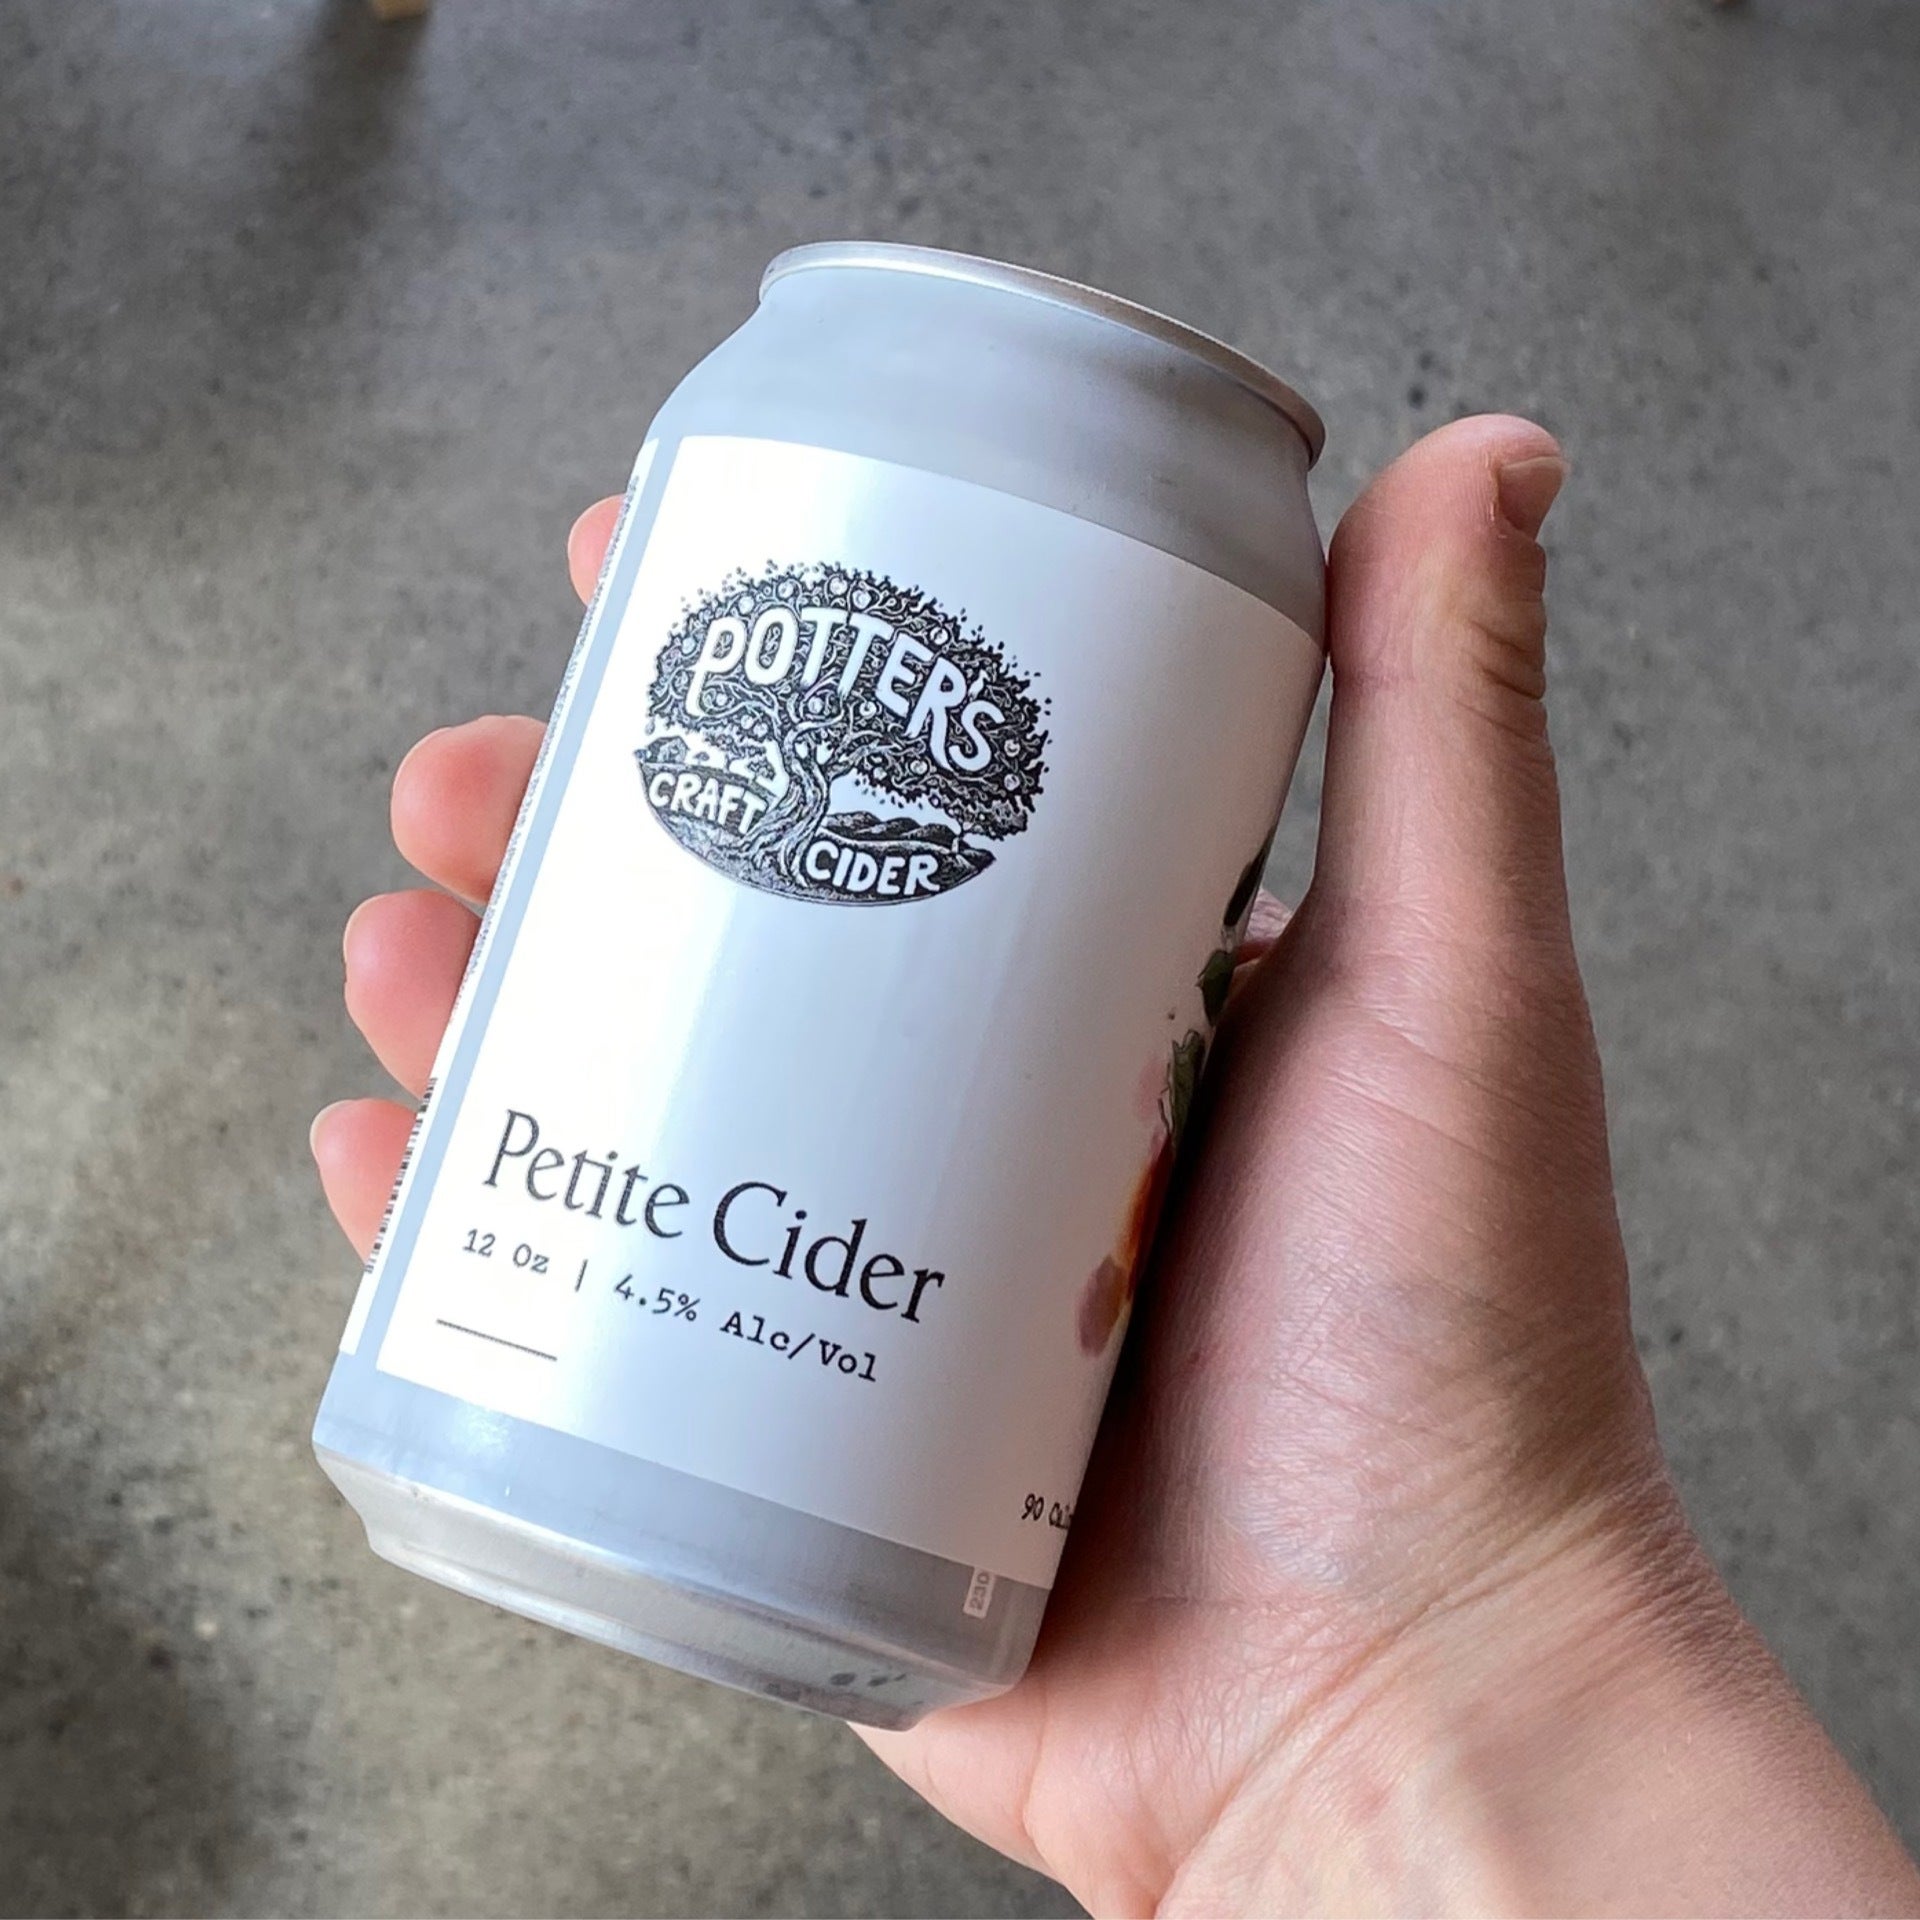 Potter's Craft Cider